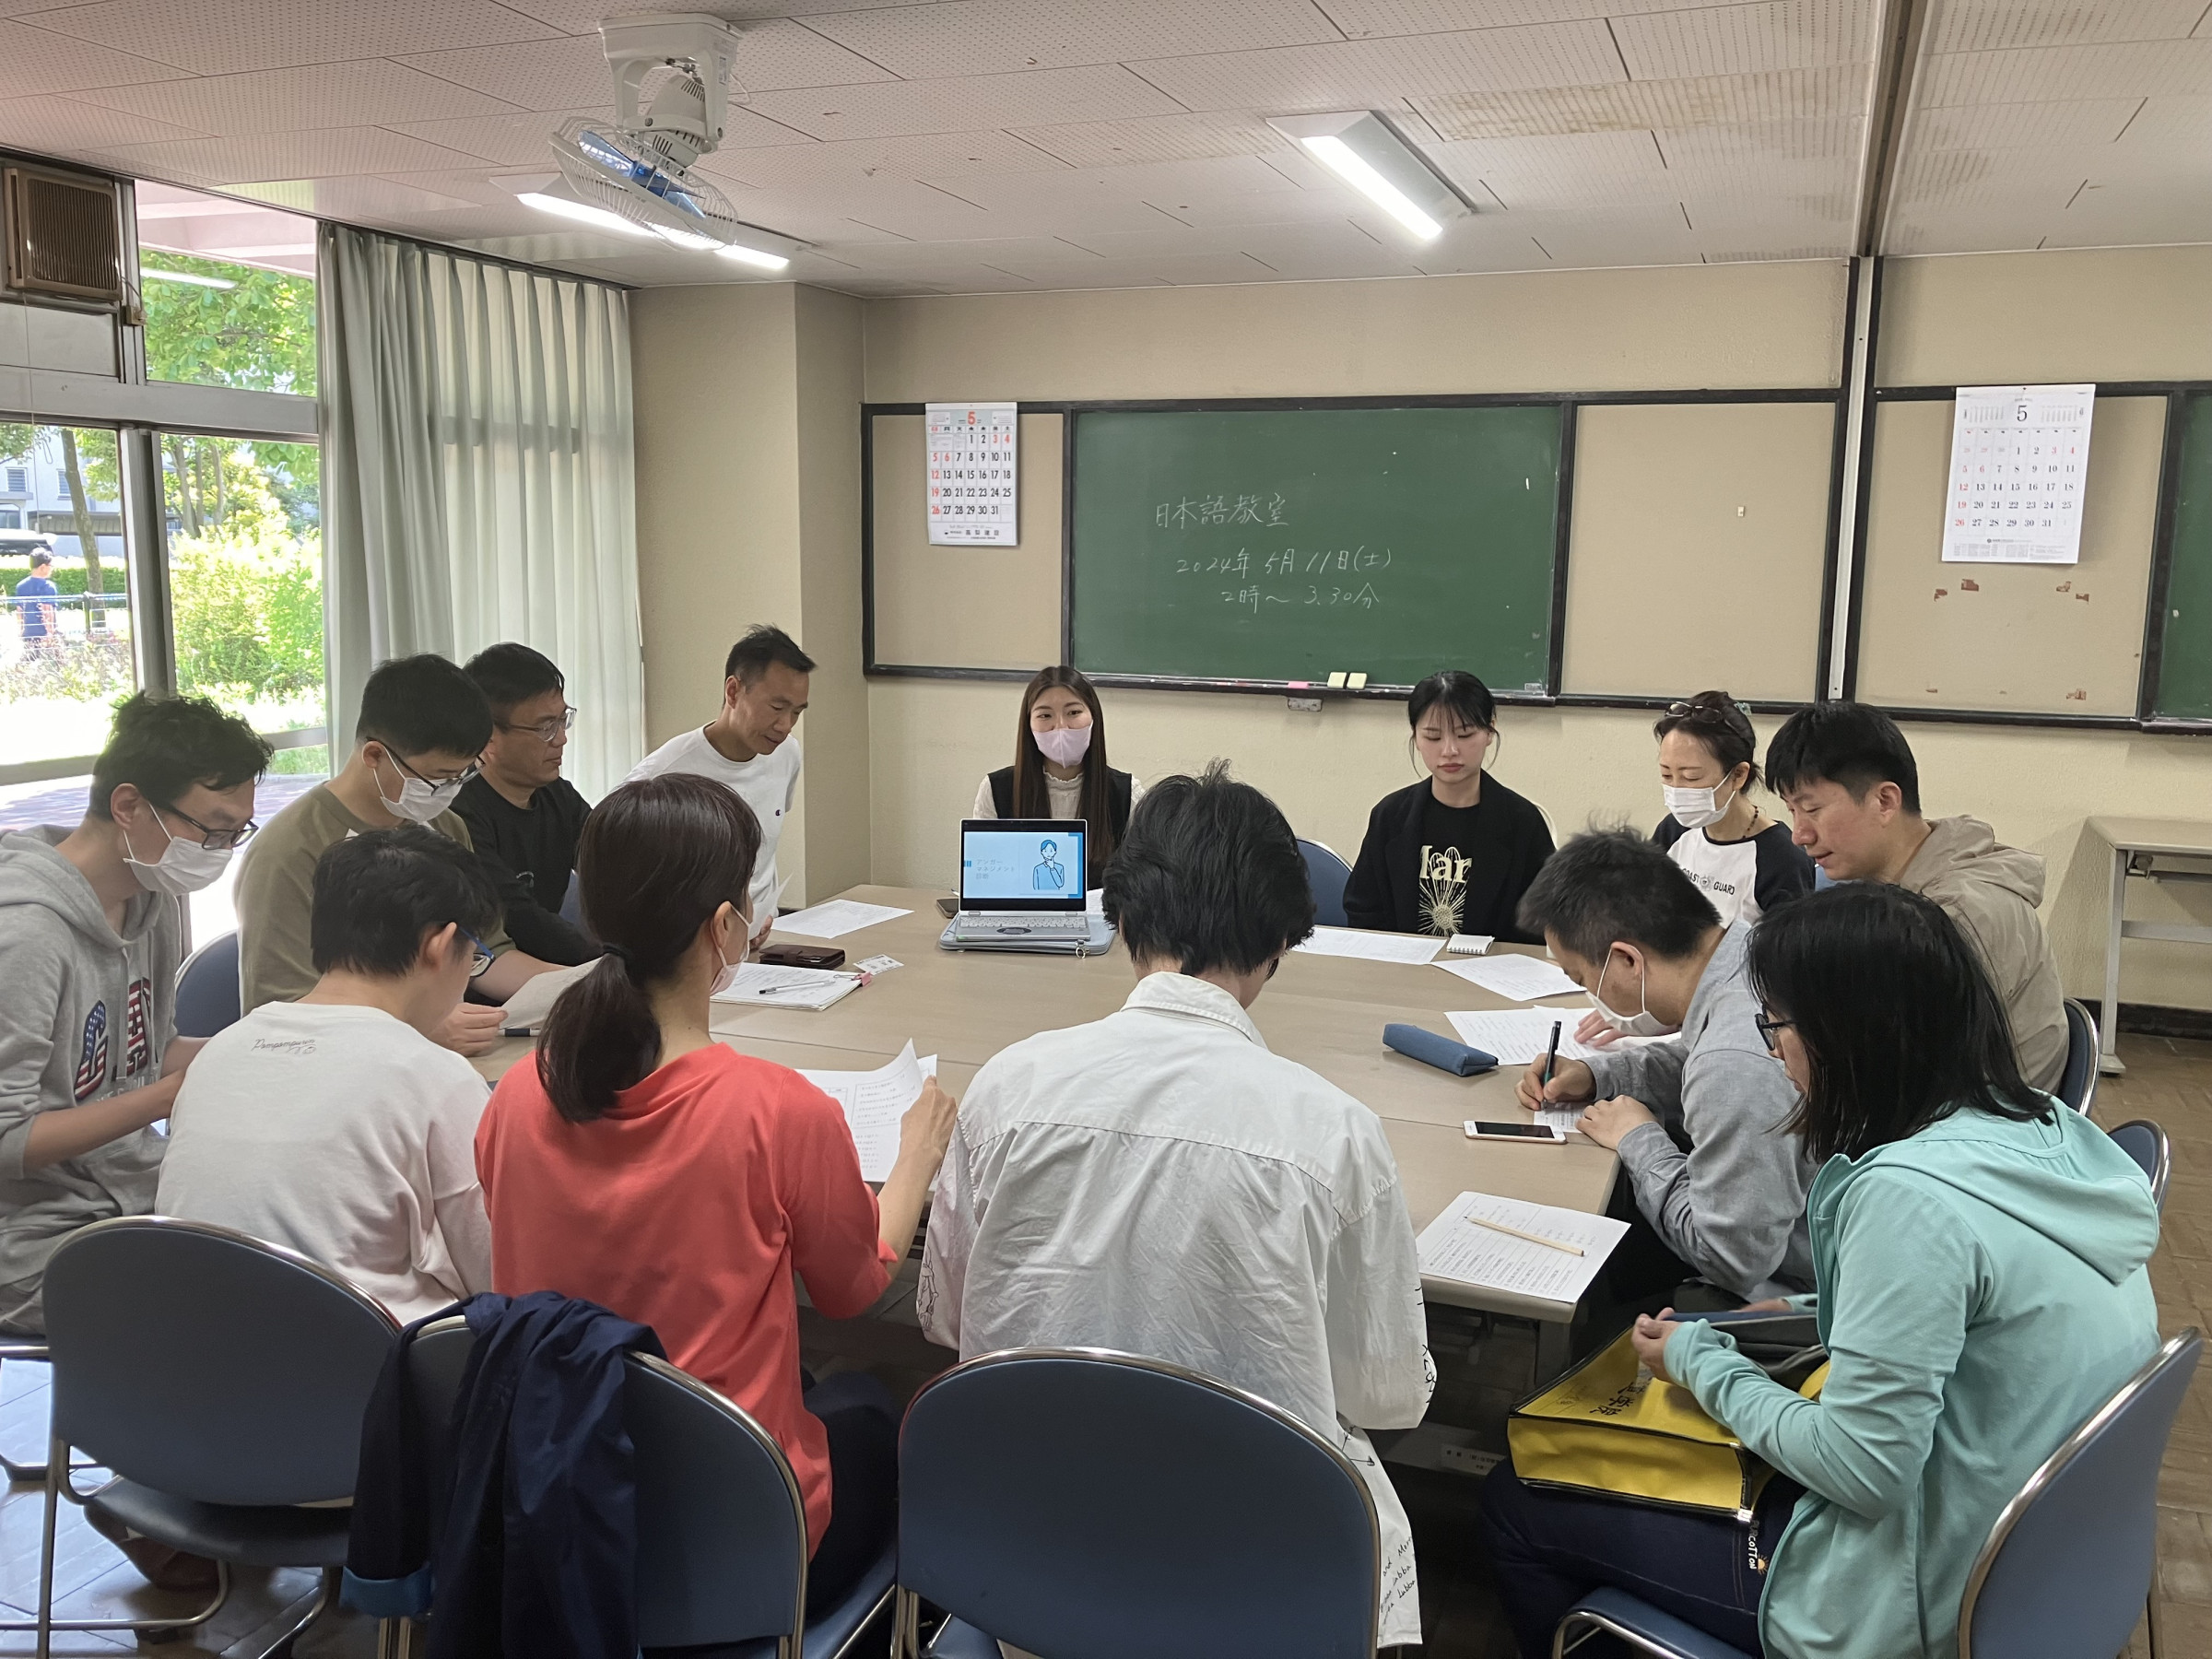 初級日本語教室は5月から新しい手法をとりいれ、双方向での授業になりました。覚えたての日本語を駆使して活発な意見交換が行われています。